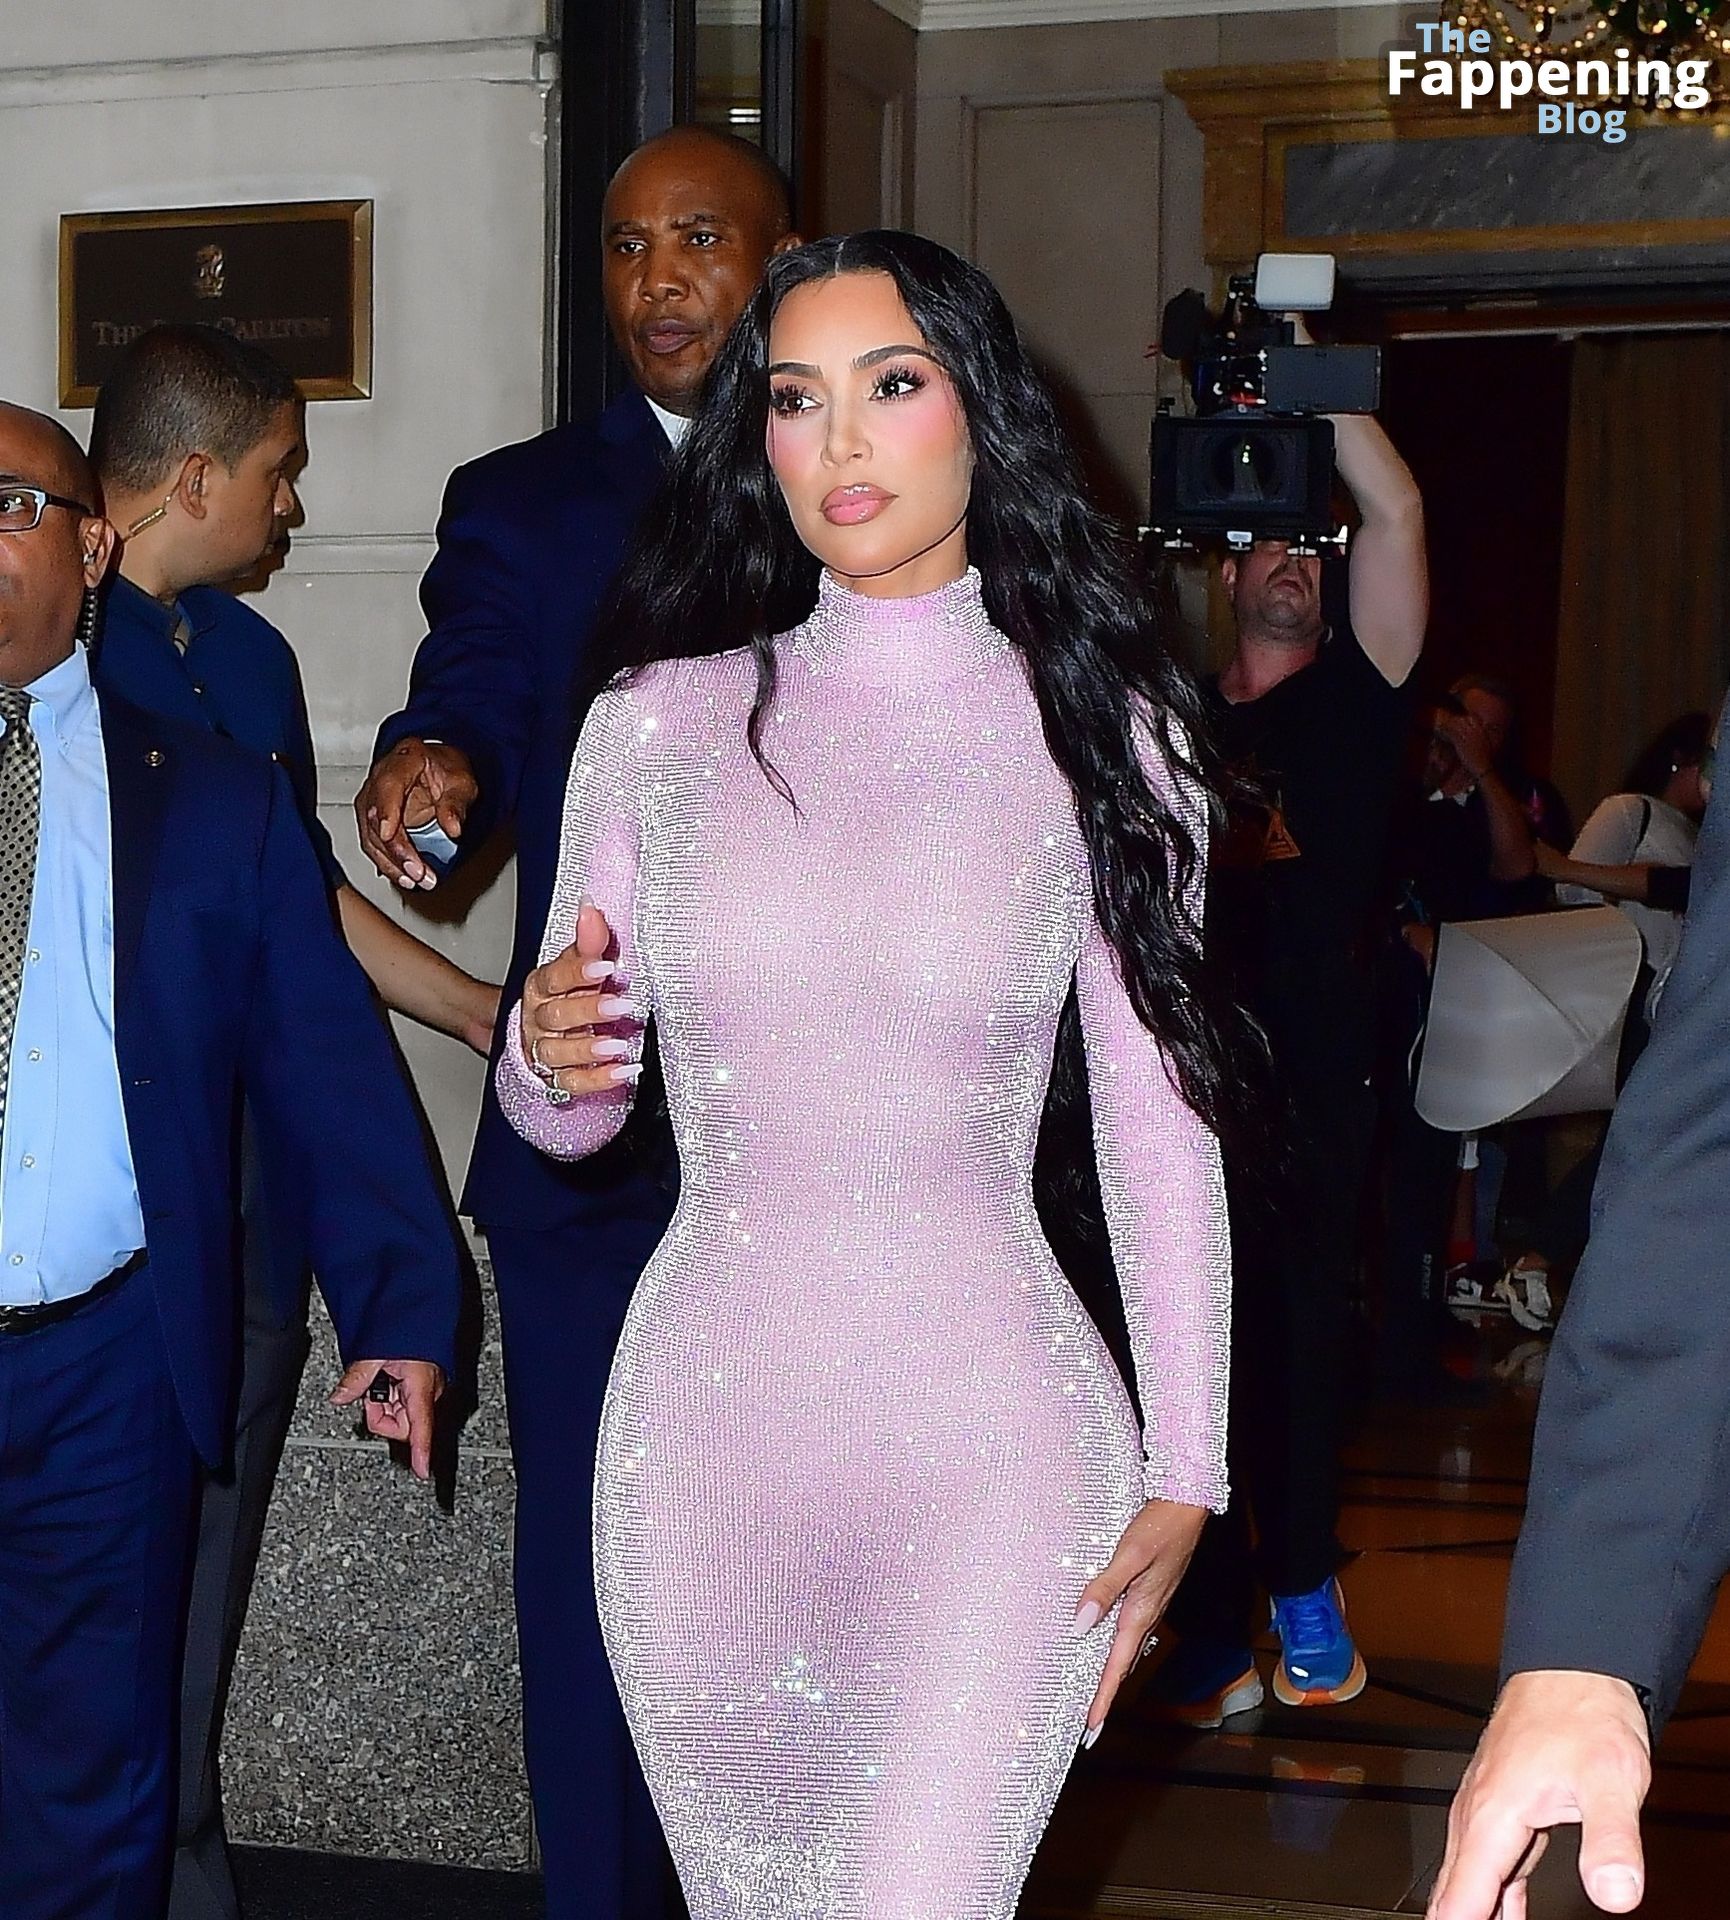 Kim-Kardashian-Sexy-8-The-Fappening-Blog-1.jpg